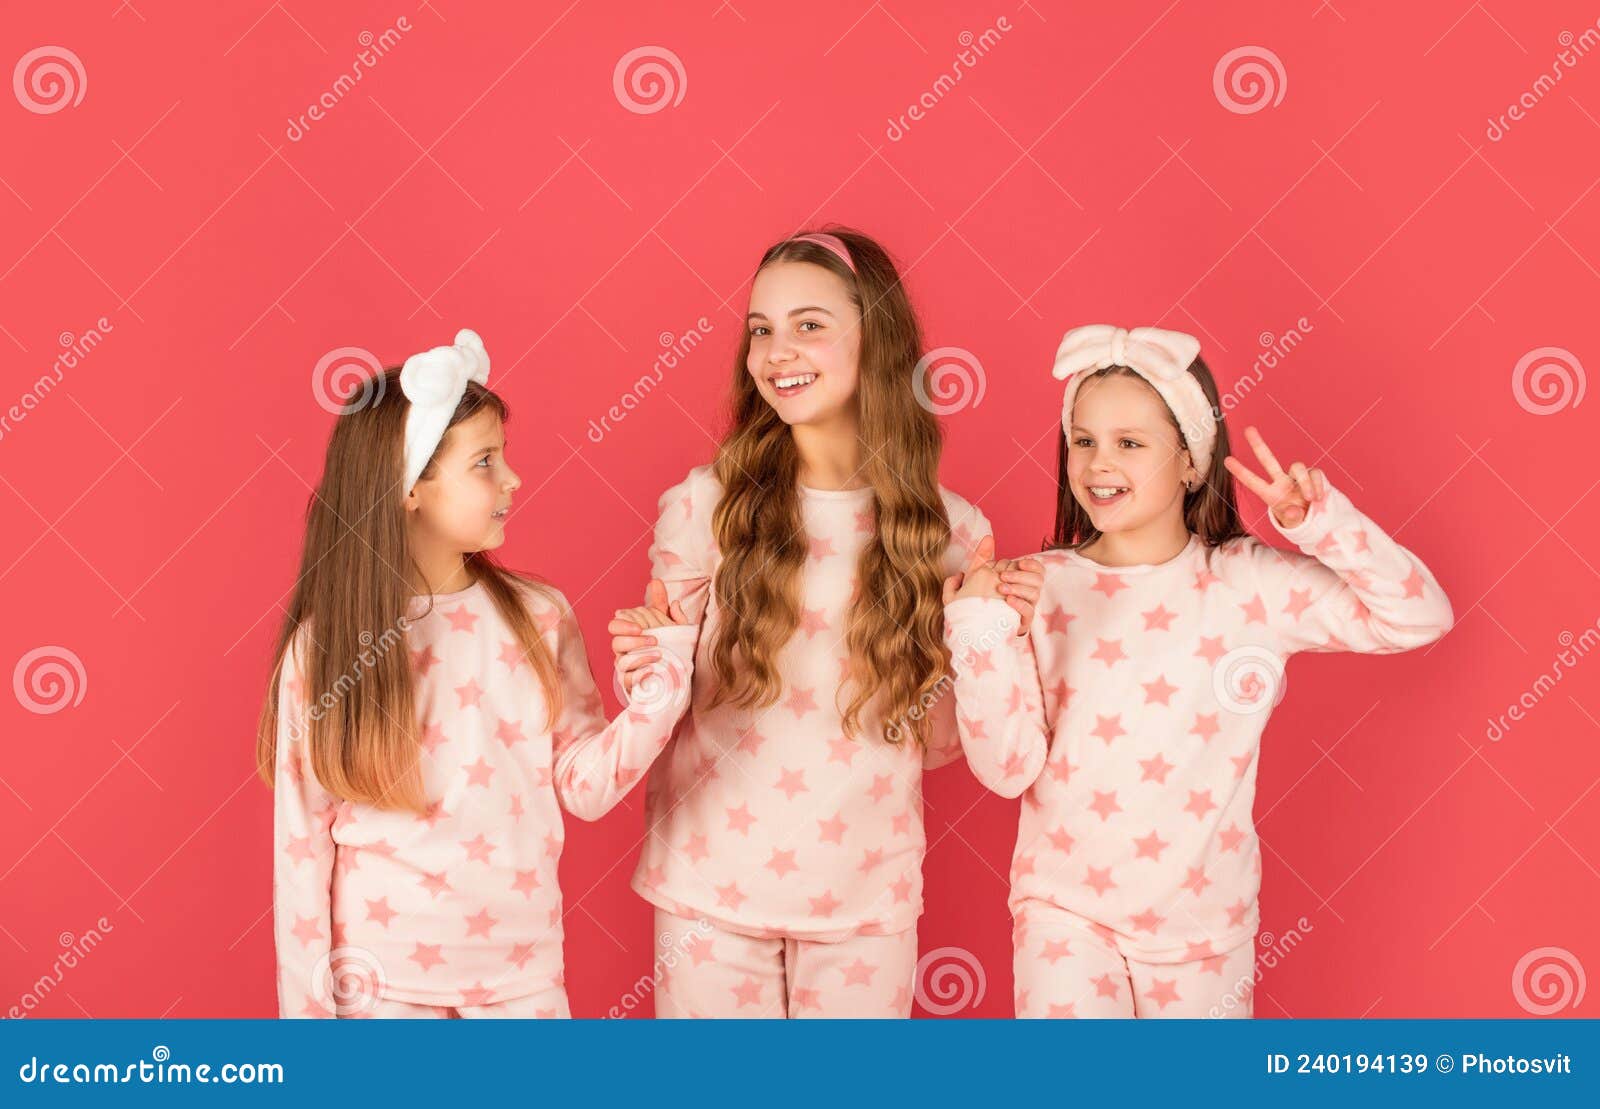 Ropa Casa Y Pijamas Para Los Niños. Hermanas Felices En Ropa Casa. La Mano Y Dar V. Imagen de archivo - Imagen de amigos, emociones: 240194139